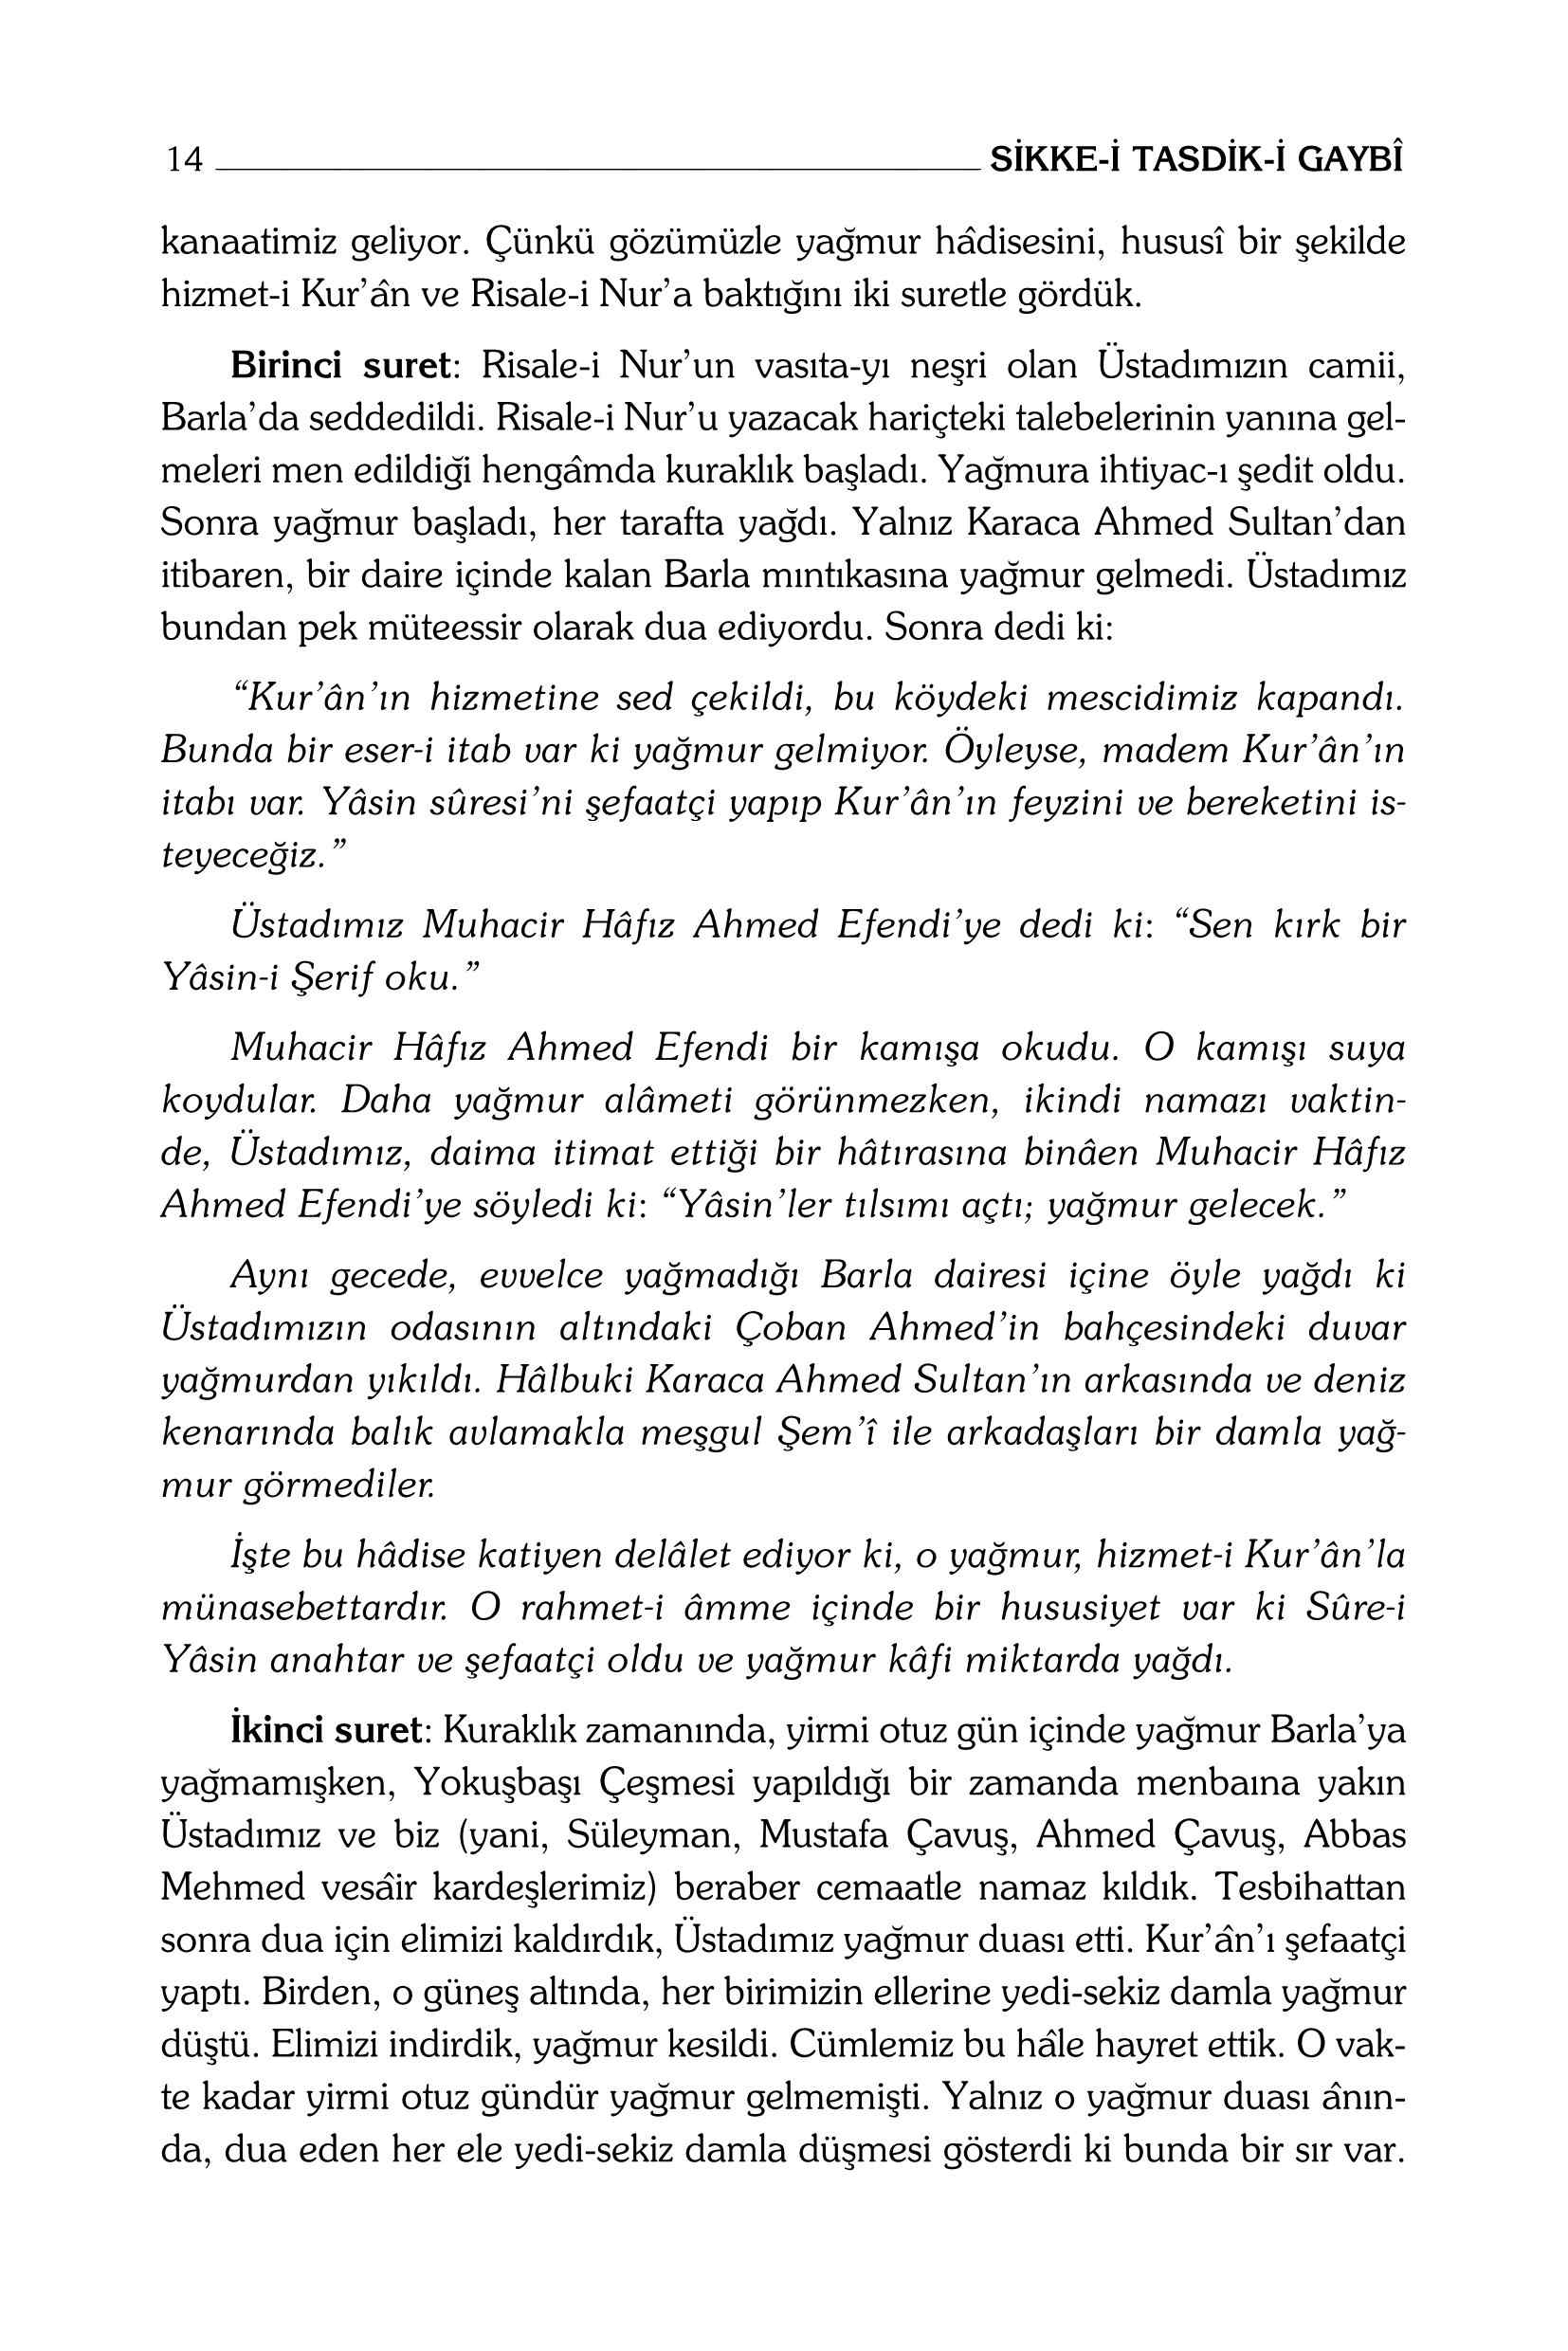 B Said Nursi - Sikke-i Tasdik Gaybi - SahdamarY.pdf, 264-Sayfa 